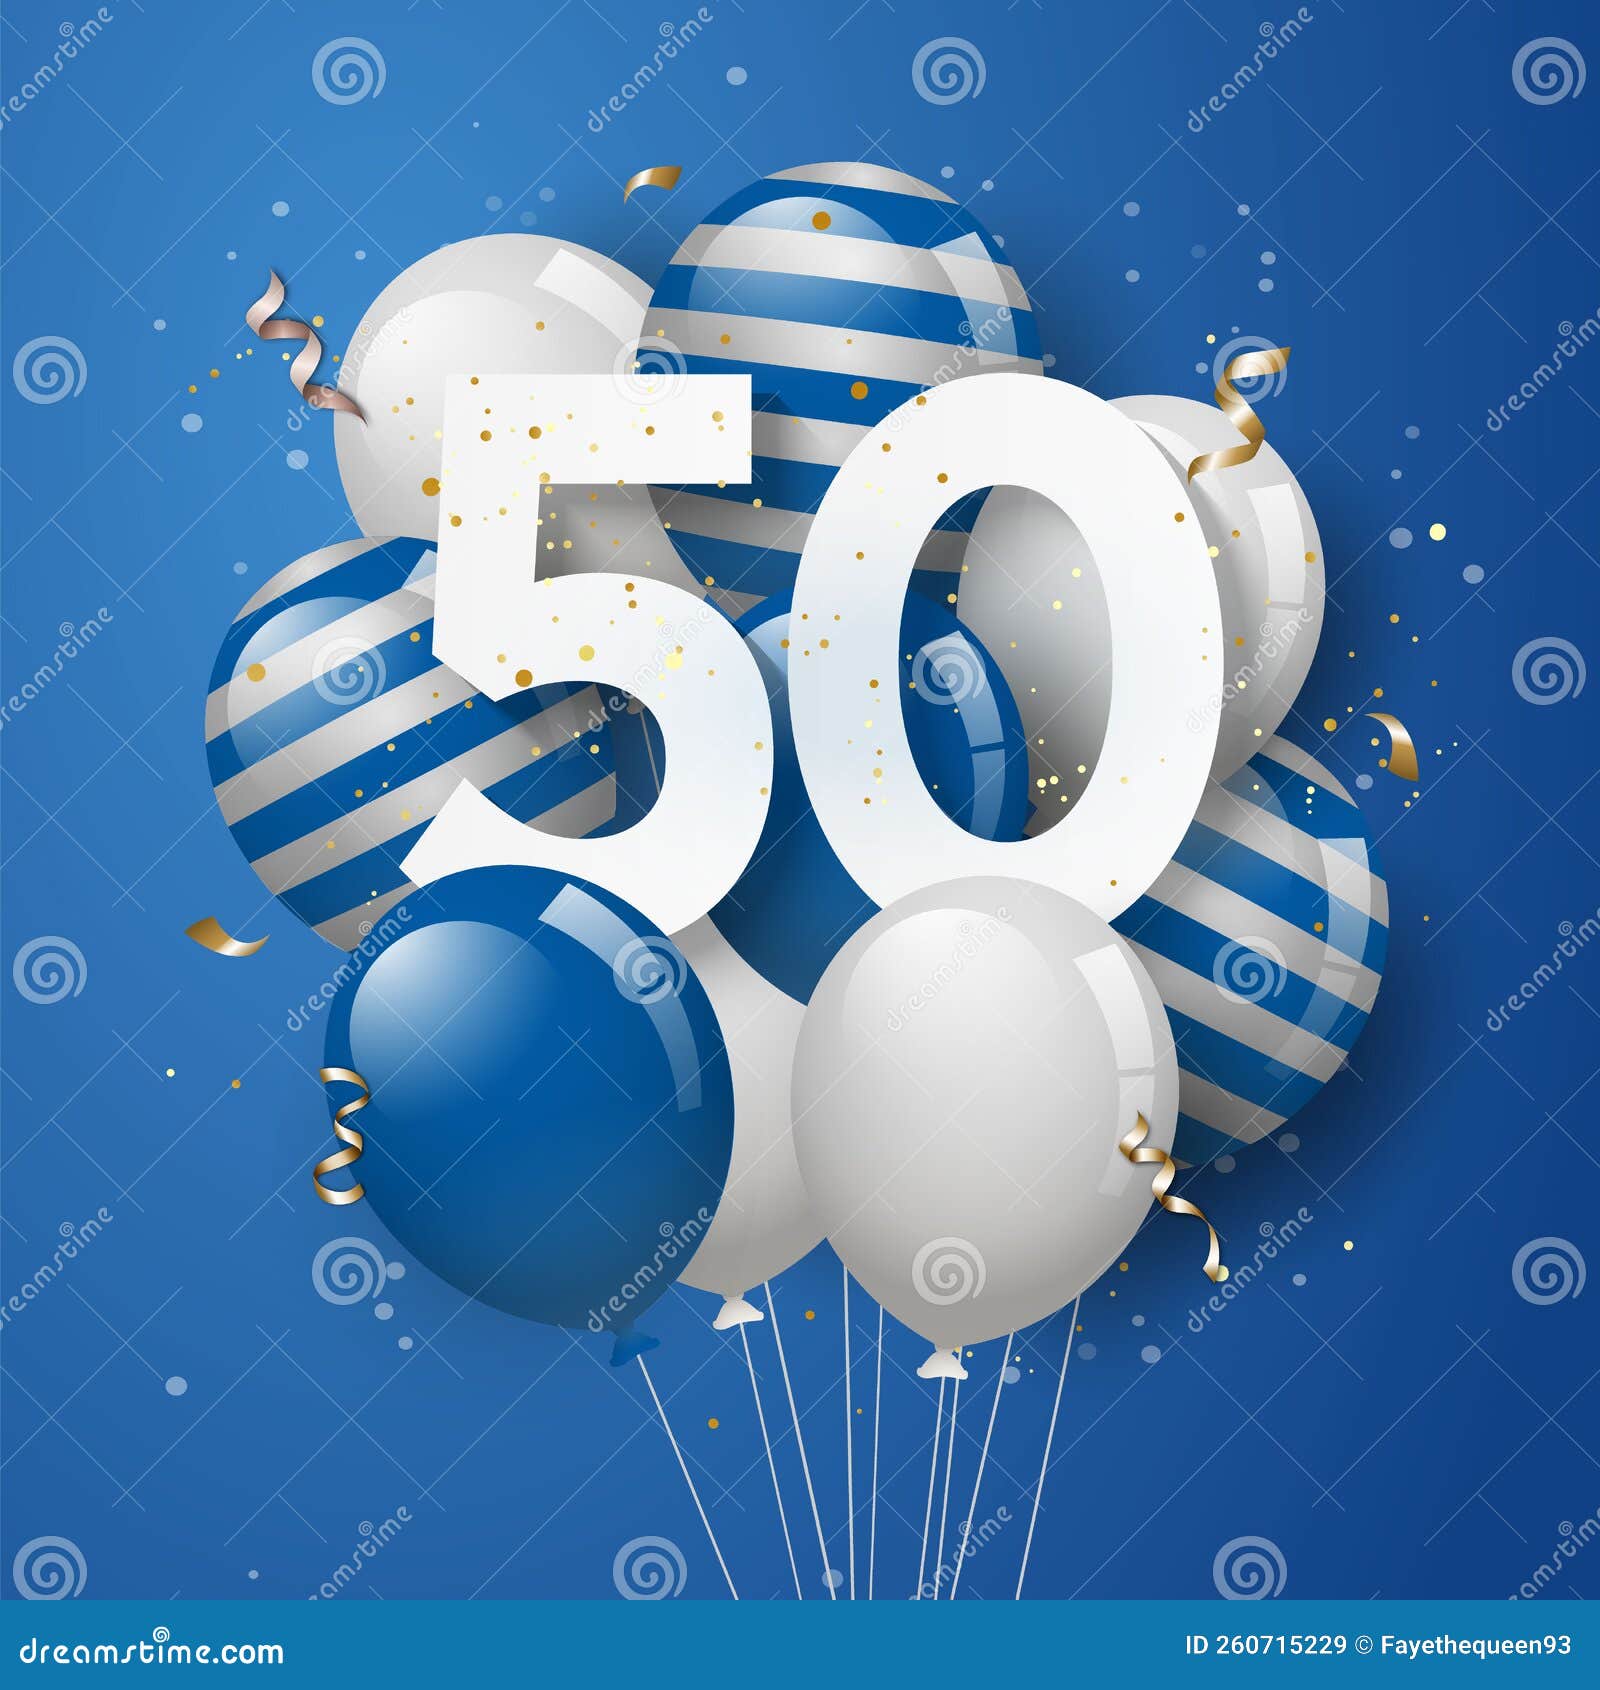 50 años de edad. globos de oro número 50 aniversario, feliz cumpleaños  felicitaciones.